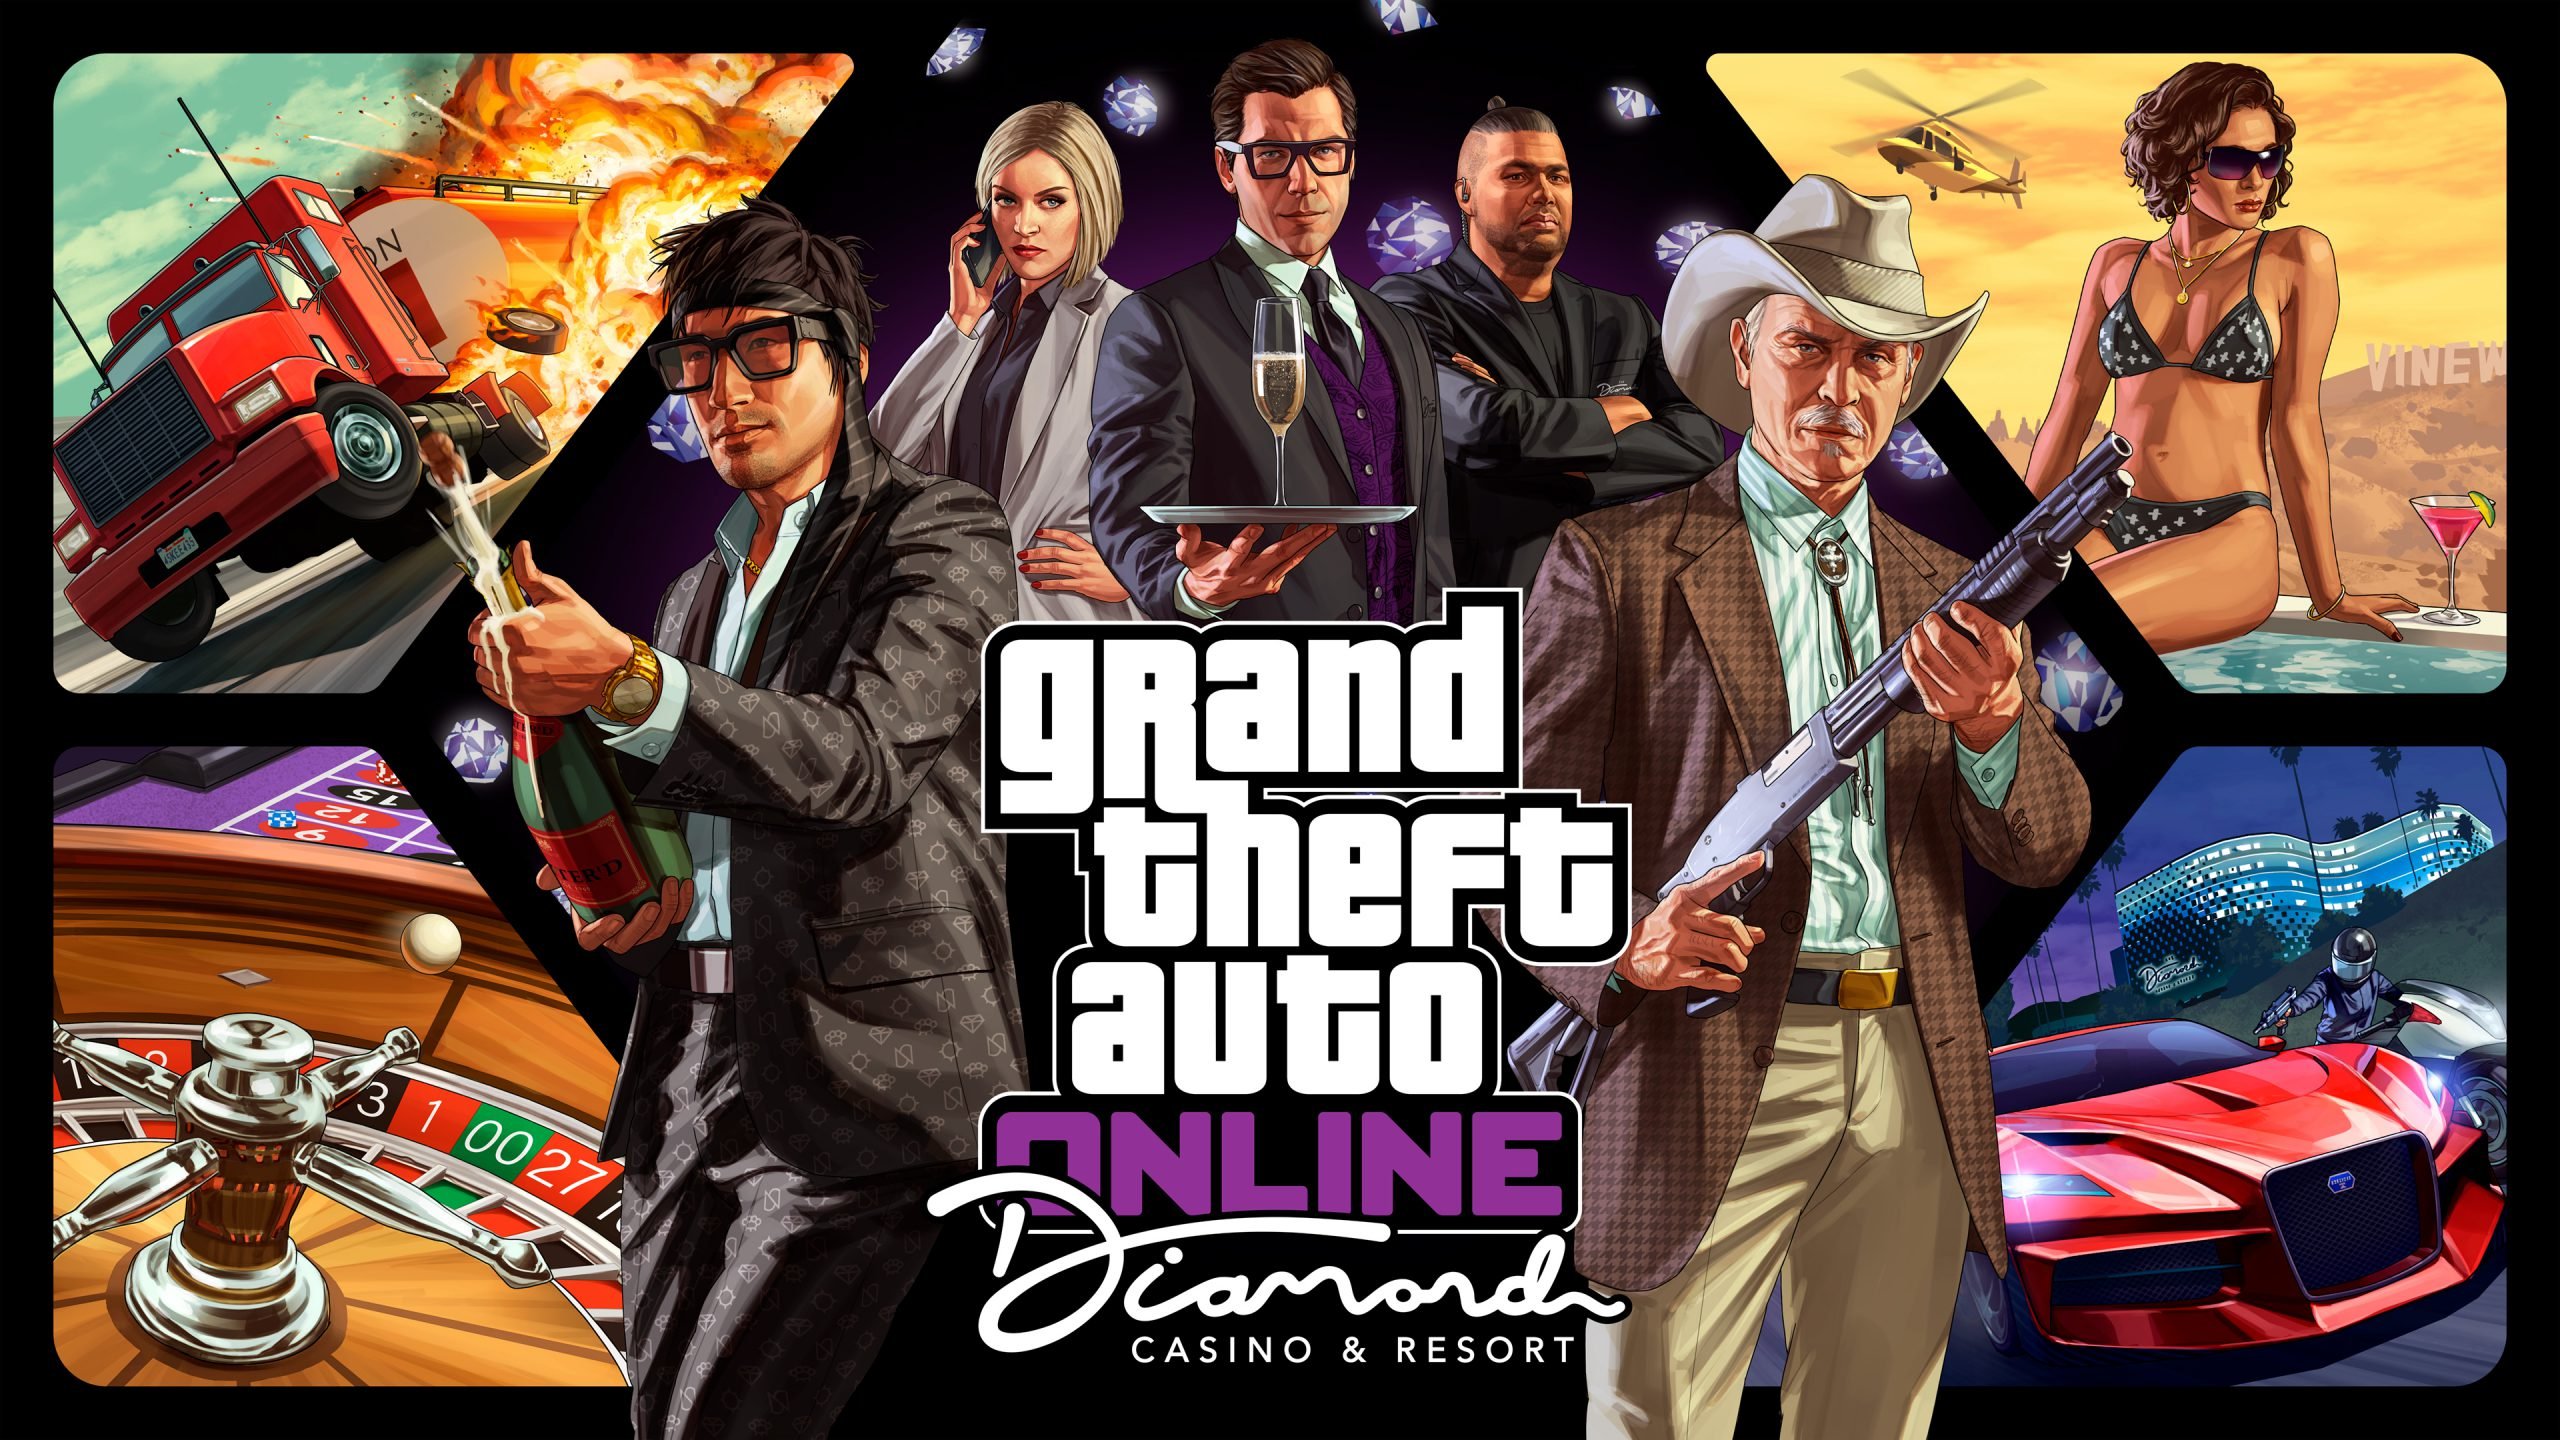 Szenen aus Grand Theft Auto Online von Rockstar Games|Spielszene im Casino aus GTA Online.|Spielszene aus VirtuaVerse|Spielszene aus Genesis Noir|Spielszene aus VR Giants